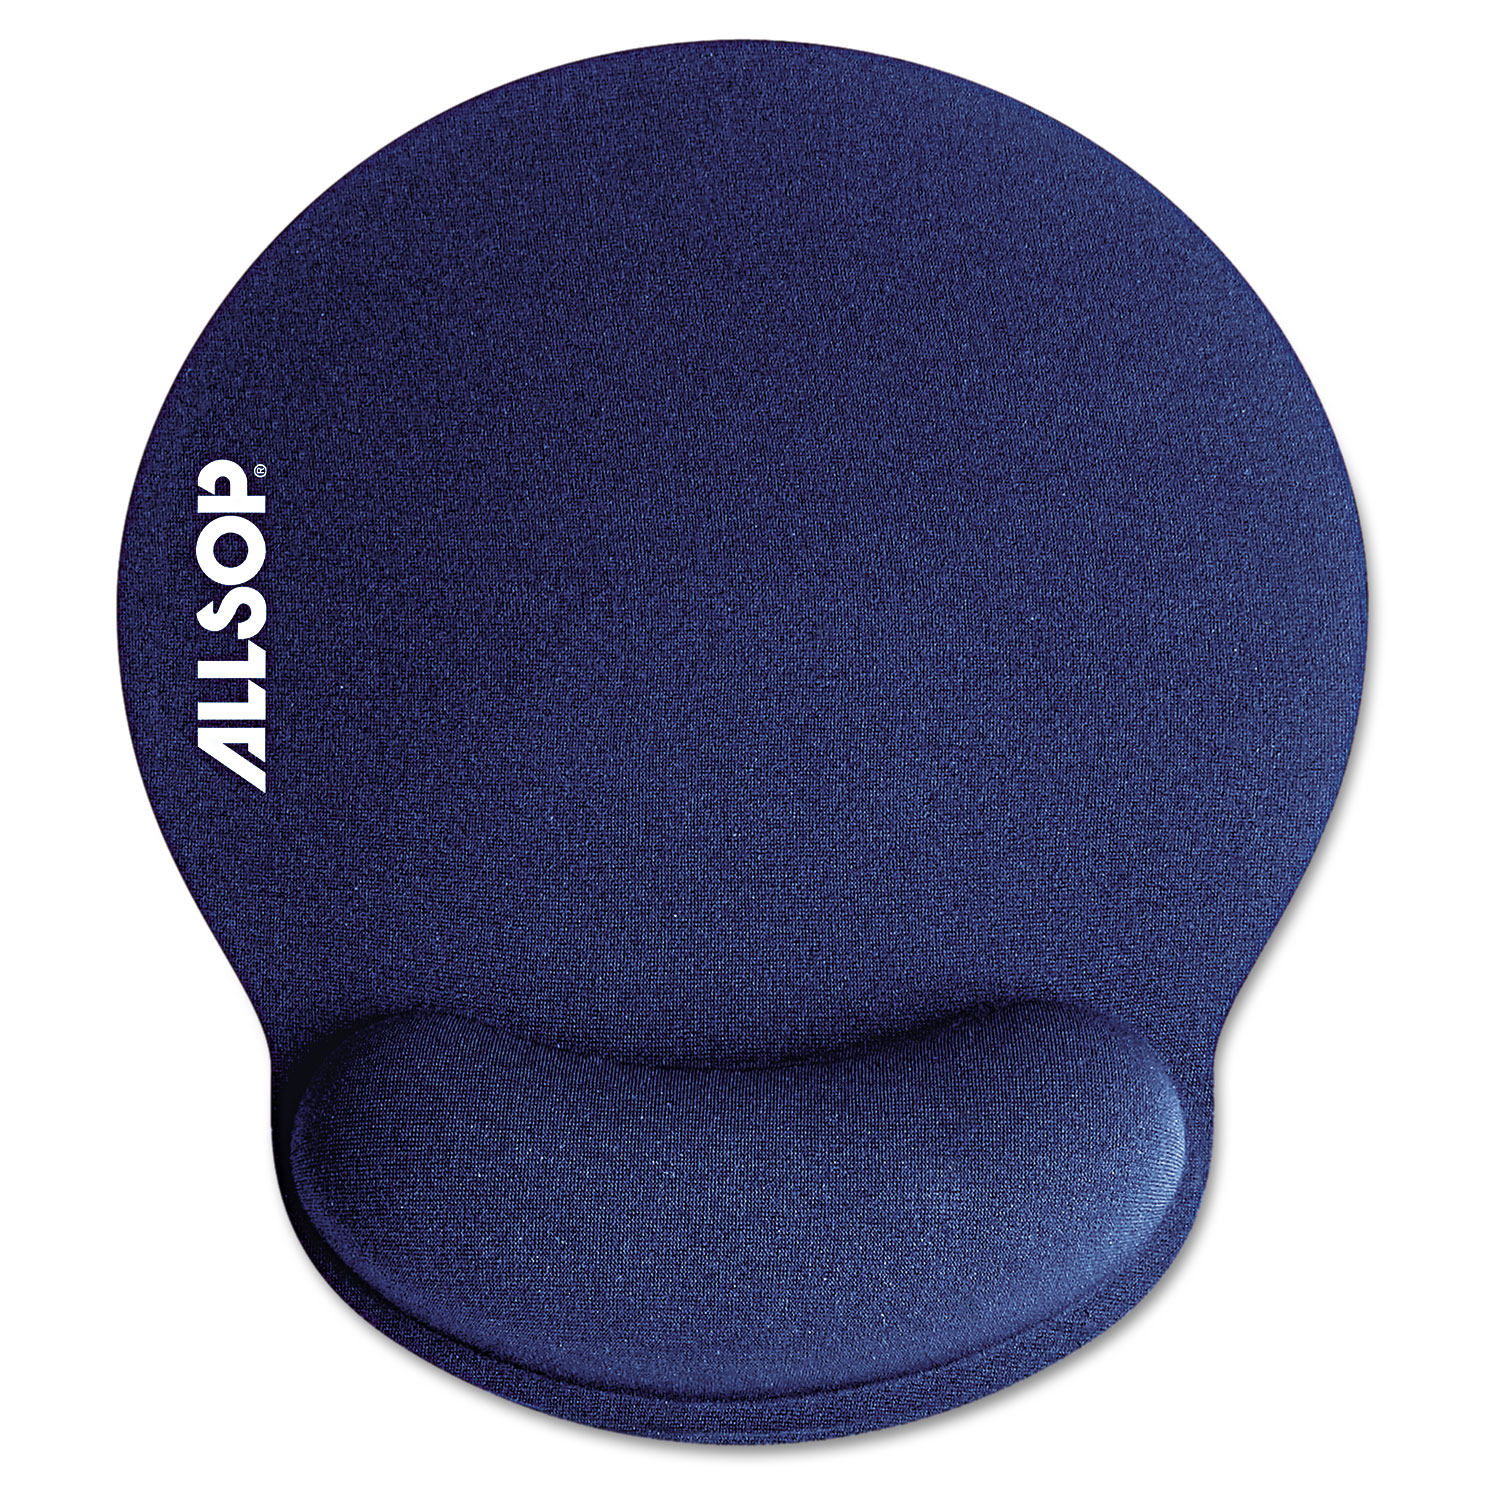  Allsop 30206 MousePad Pro Memory Foam Mouse Pad with Wrist Rest, 9 x 10 x 1, Blue (ASP30206) 